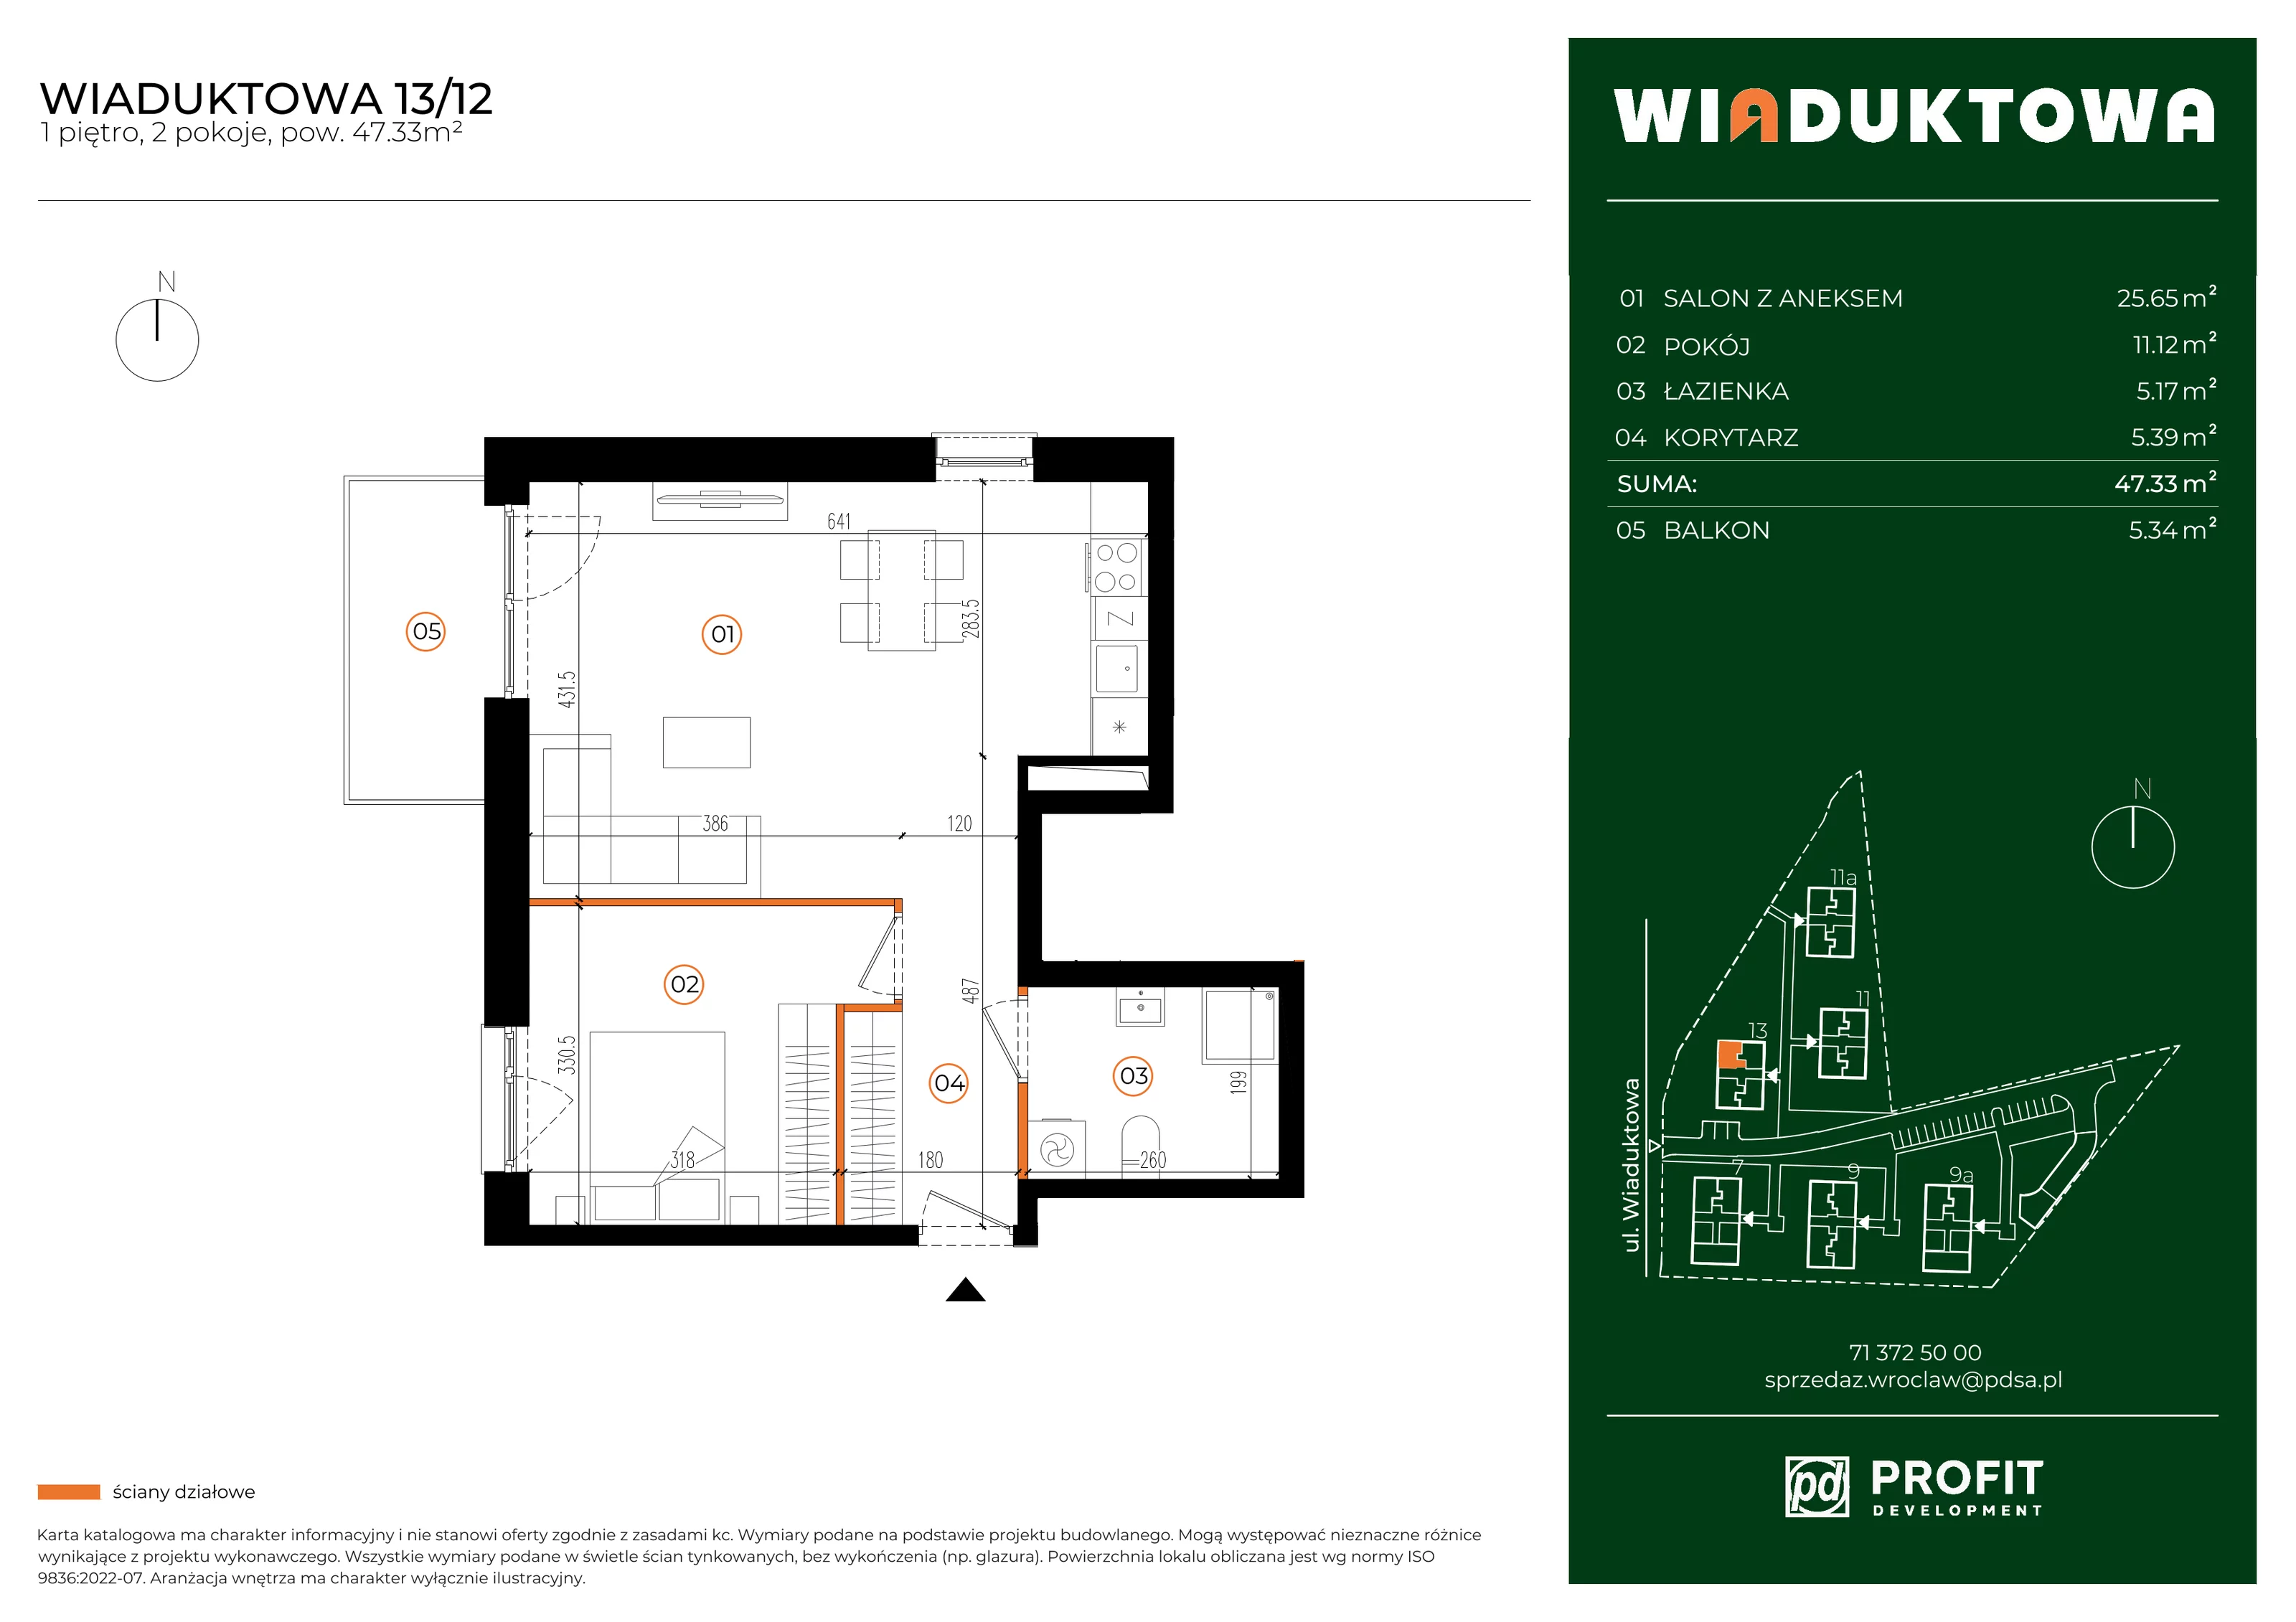 Mieszkanie 47,33 m², piętro 1, oferta nr WI/13/12, Wiaduktowa, Wrocław, Krzyki-Partynice, Krzyki, ul. Wiaduktowa